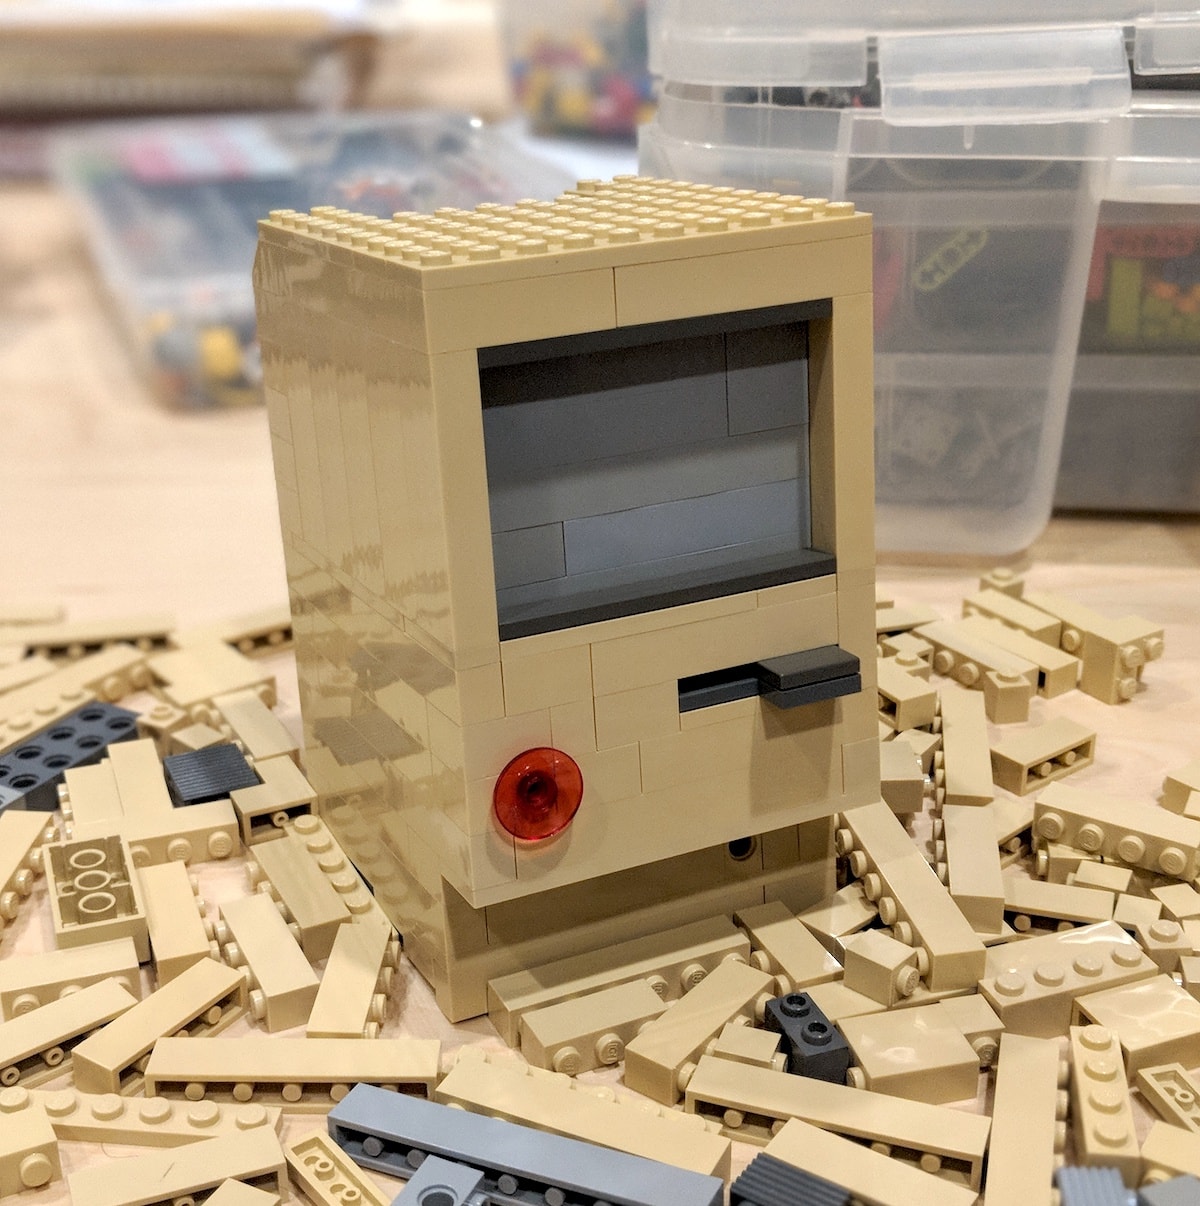 A Lego model of the original Macintosh